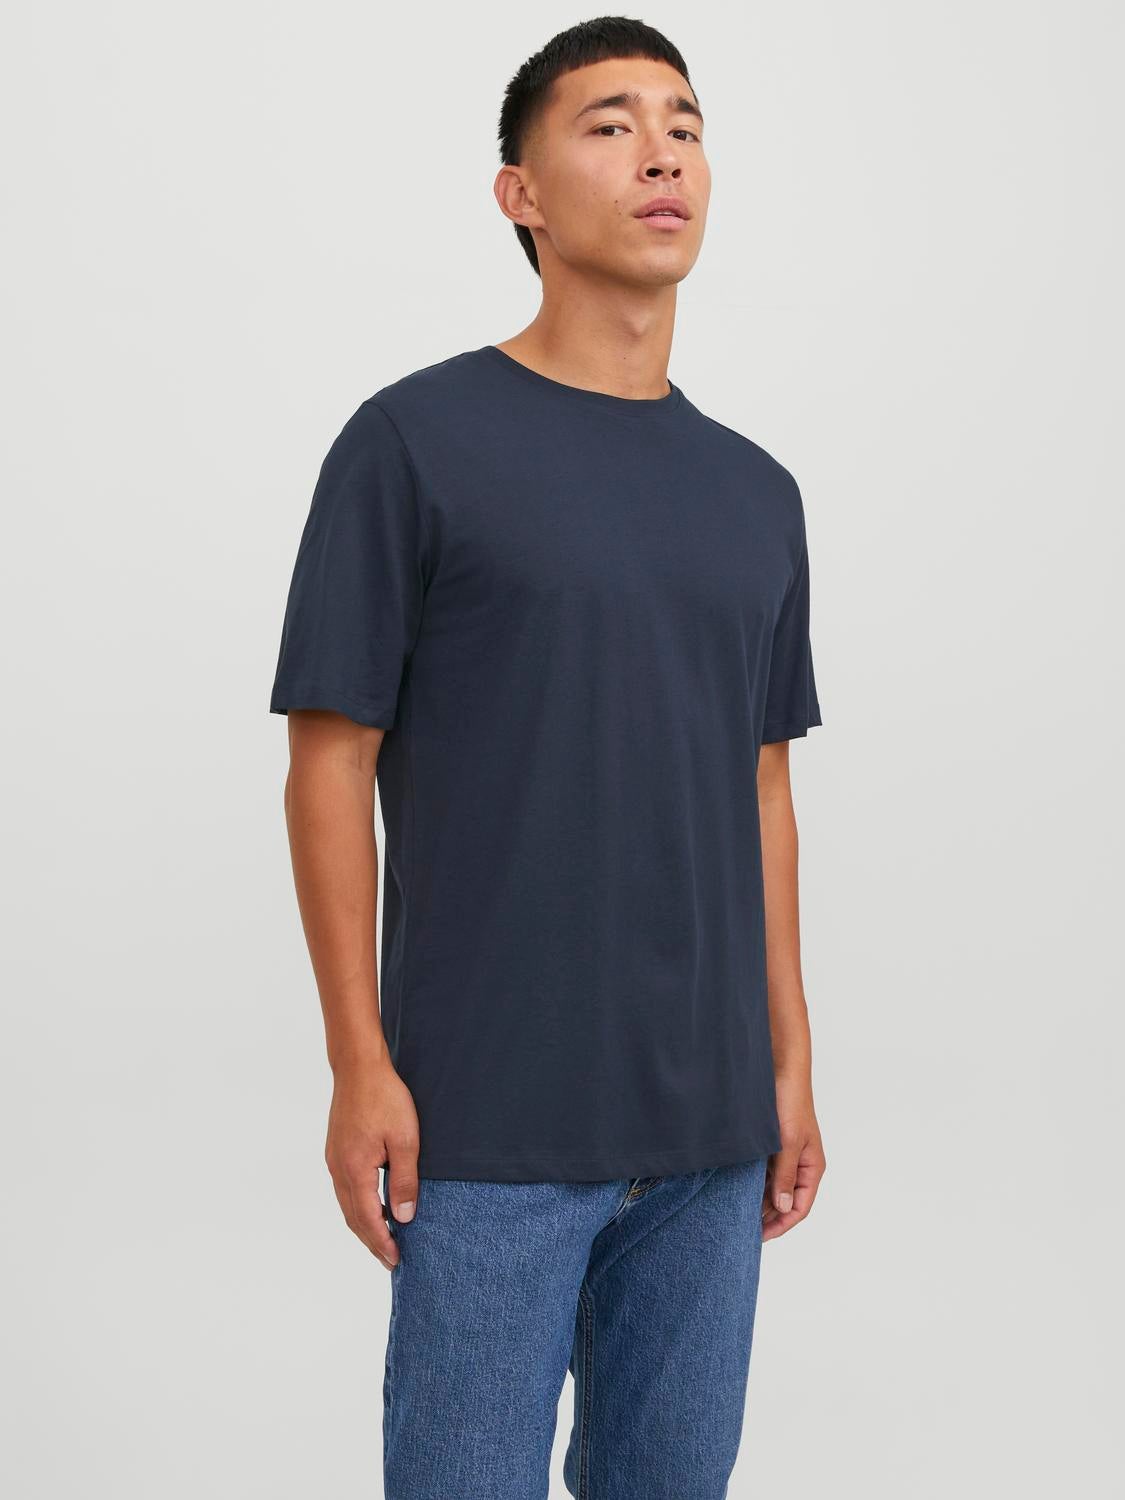 JACK  &  JONES Jack & Jones Mens Essentials T-Shirt Cotton T Shirt Casual Crew Tops TShirt 